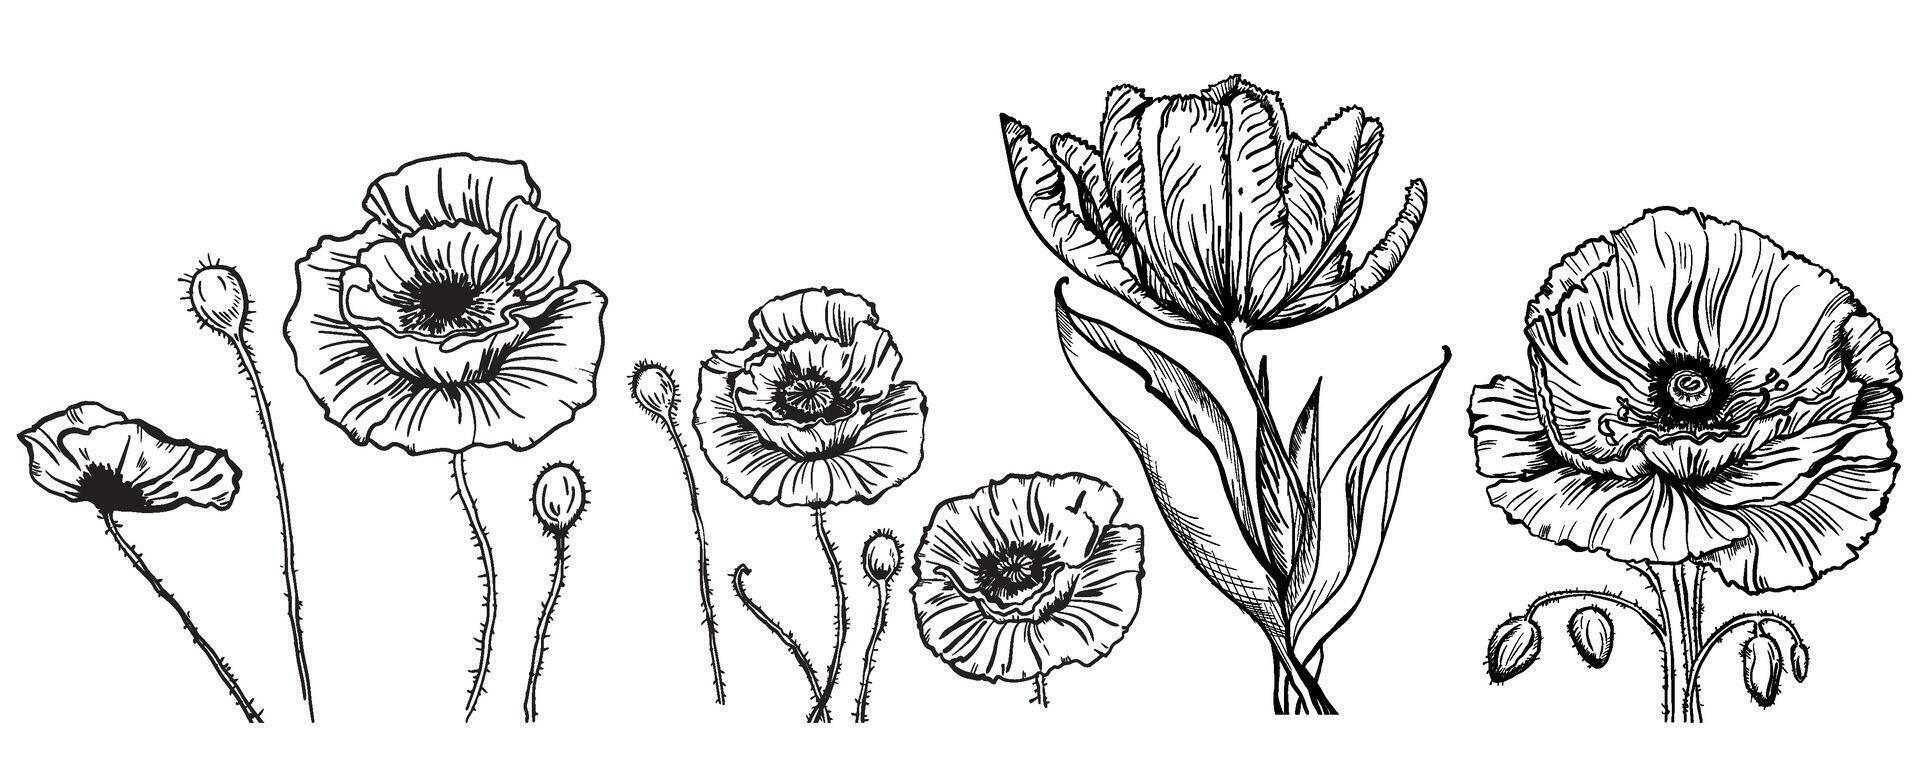 vector tekening van bloemen en bladeren van papaver en tulp, geïsoleerd bloemen elementen met een zwart lijn Aan een wit achtergrond, hand getekend illustratie van een botanicus.